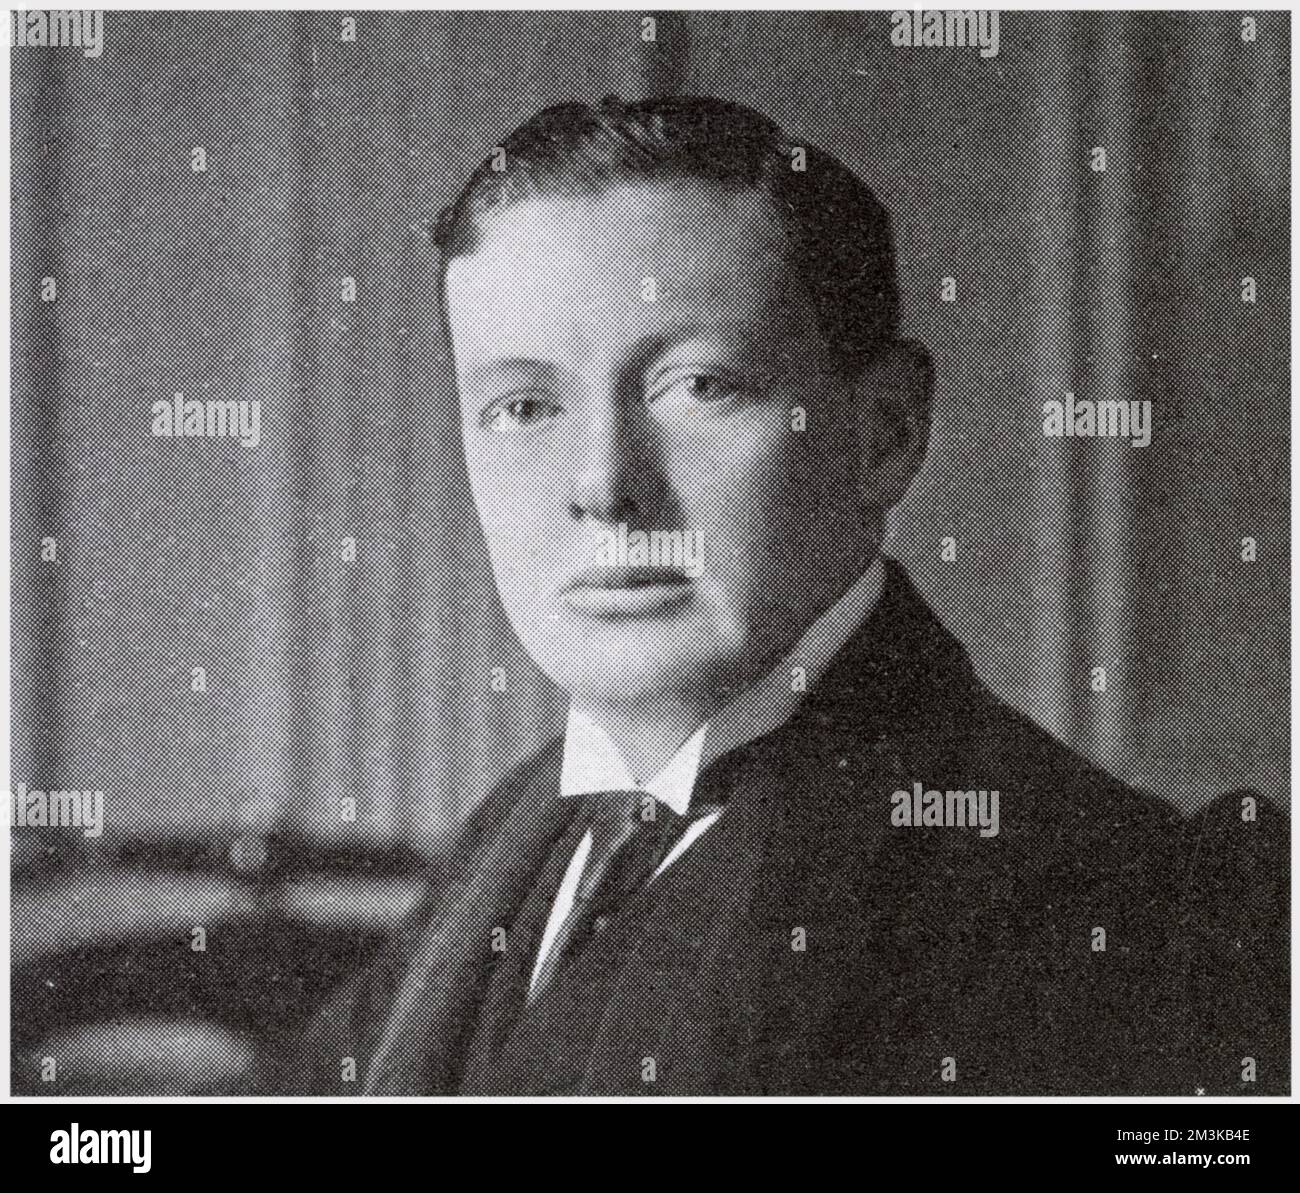 Winston Churchill (1874 - 1965), der junge Winston, während des Böhlerkrieges. Stockfoto